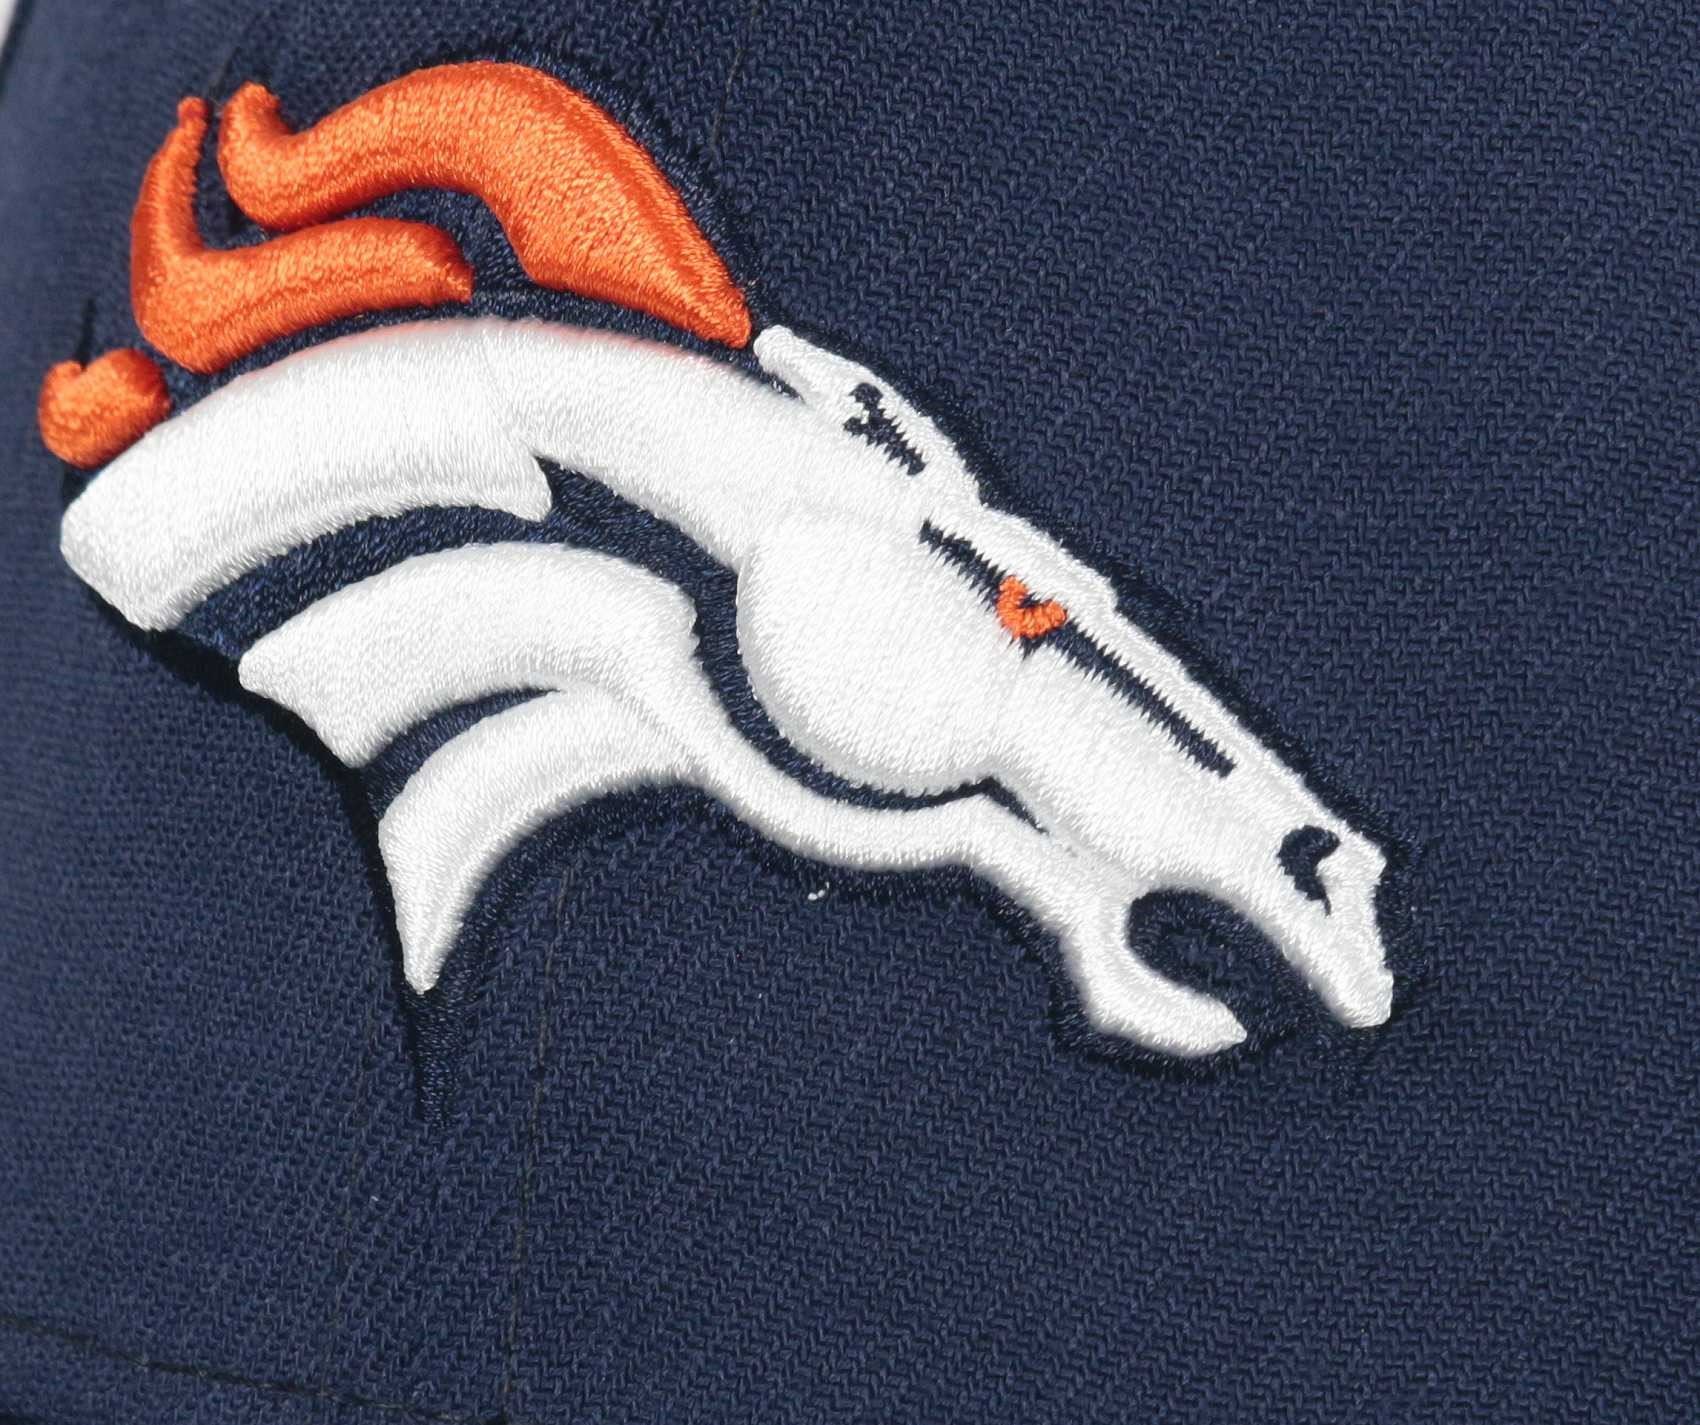 Denver Broncos NFL Core Edition 39Thirty Stretch Cap New Era